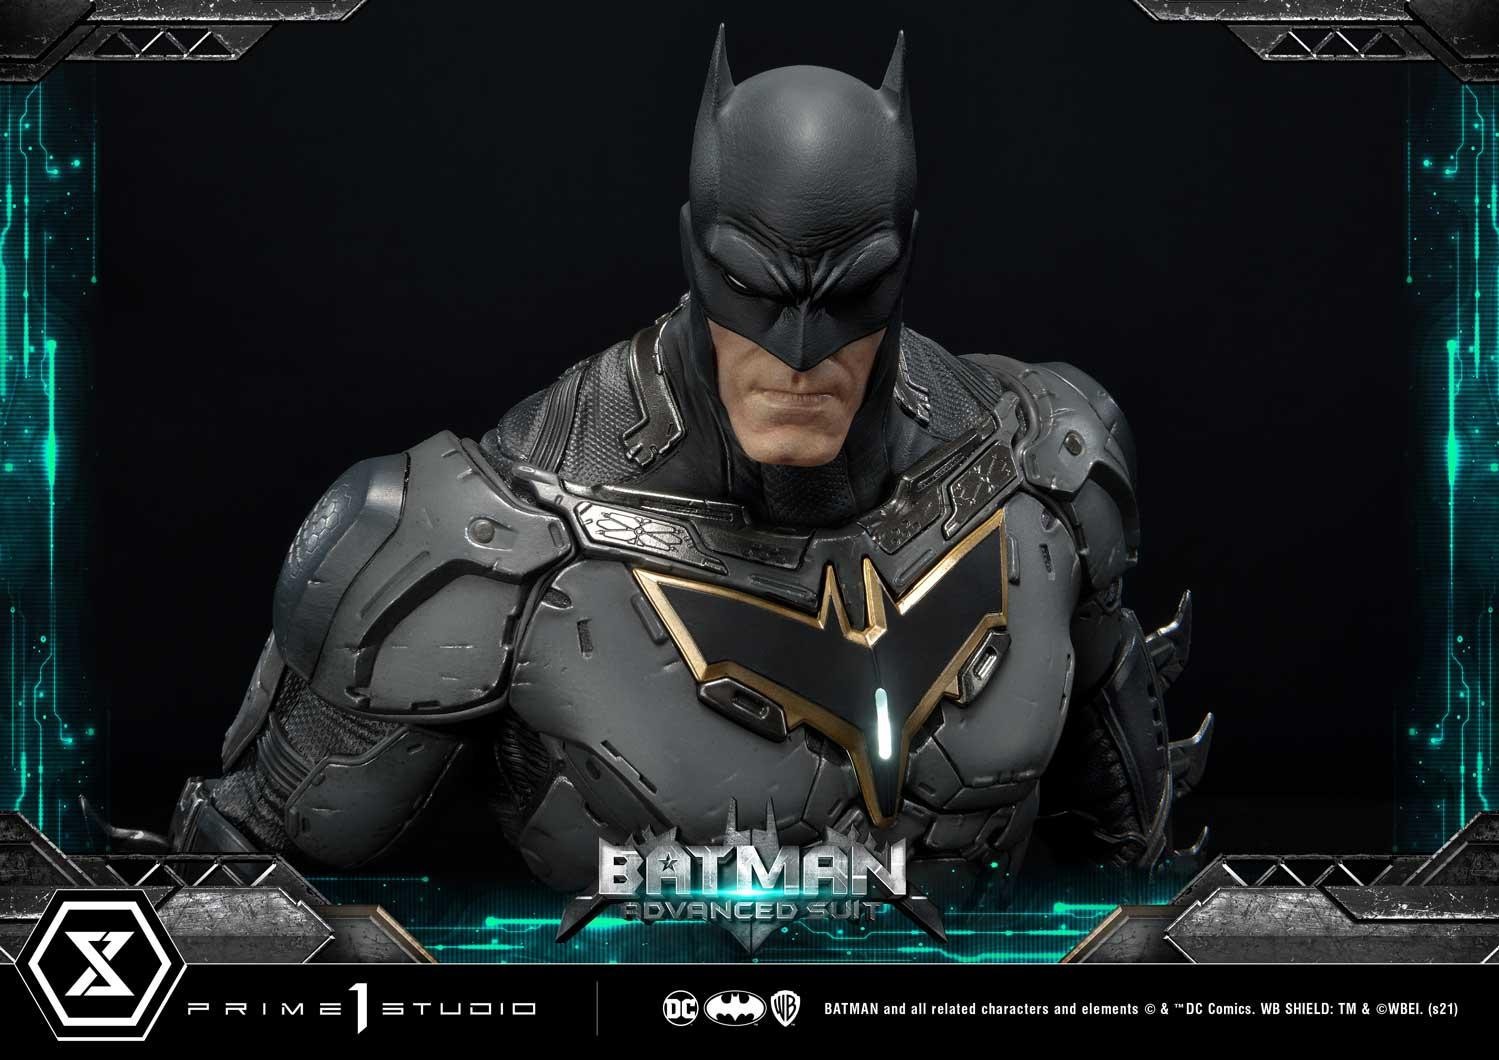 P1S超级霸气蝙蝠侠升级版战衣与芬里尔装甲套装 售价2999美元